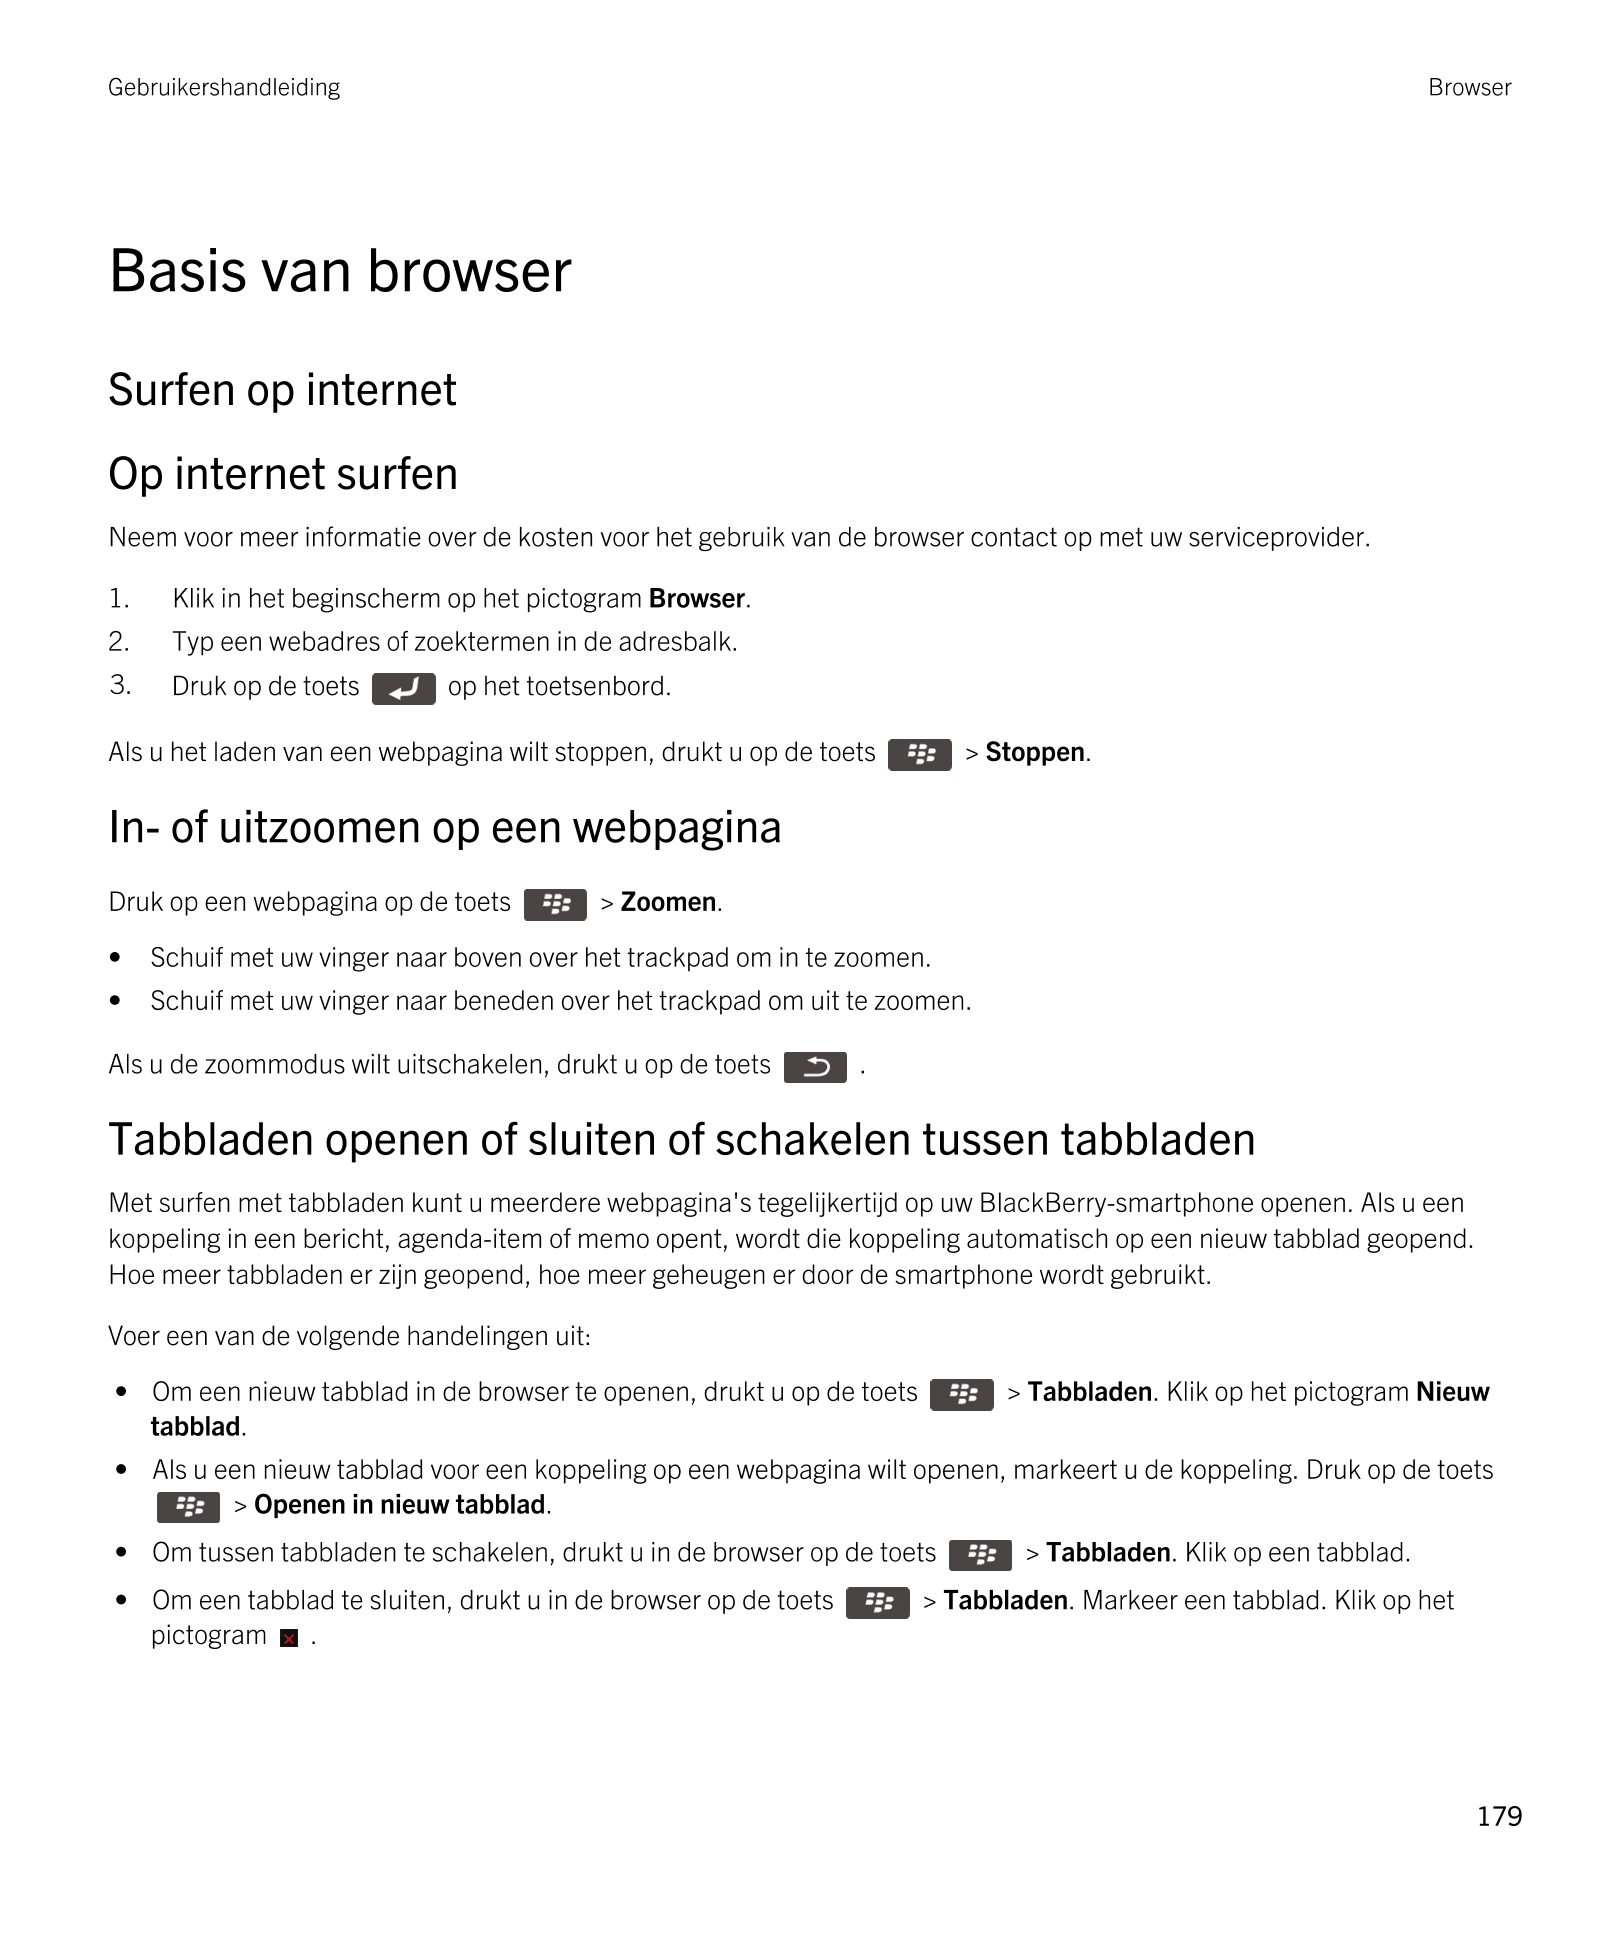 Gebruikershandleiding Browser
Basis van browser
Surfen op internet
Op internet surfen
Neem voor meer informatie over de kosten v